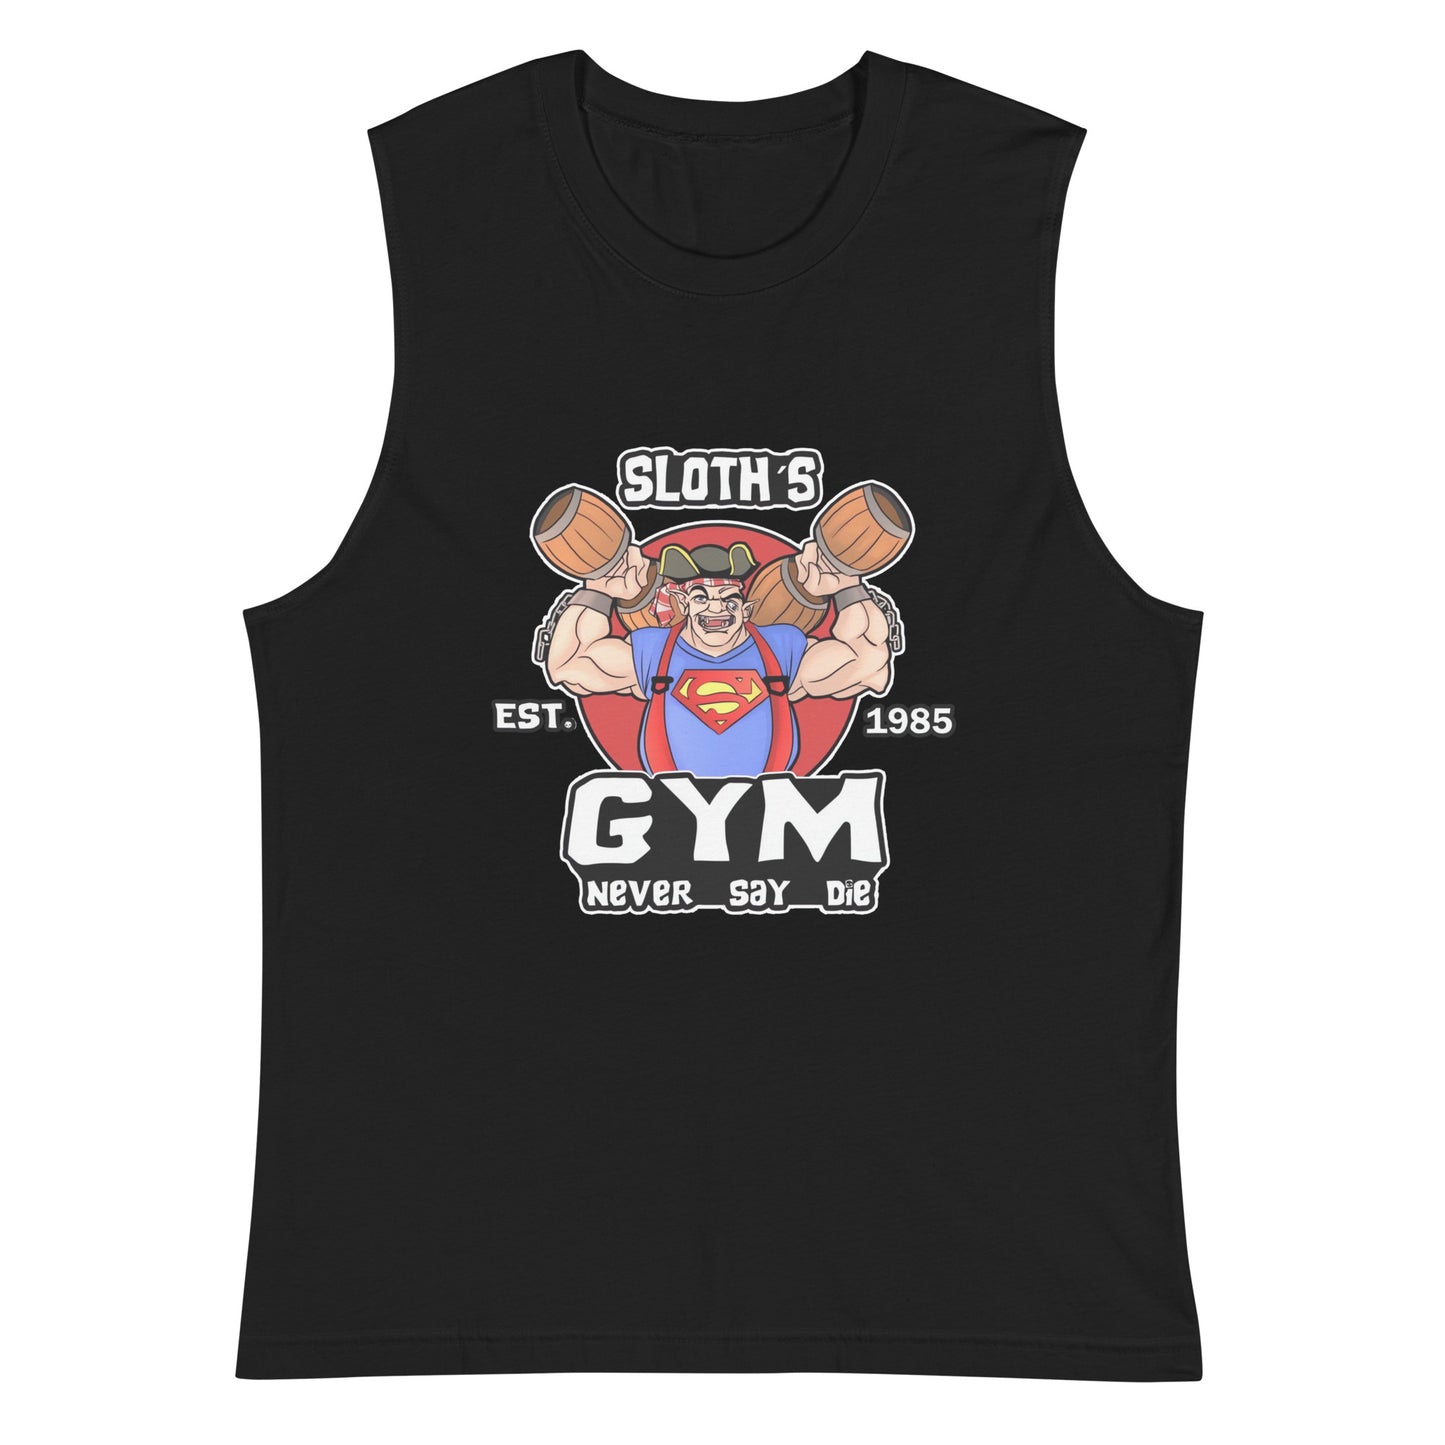 Camiseta sin mangas perfecta para entrenar, Camiseta Sloth's Gym compra en línea y experimenta el mejor servicio al cliente. envíos internacionales.